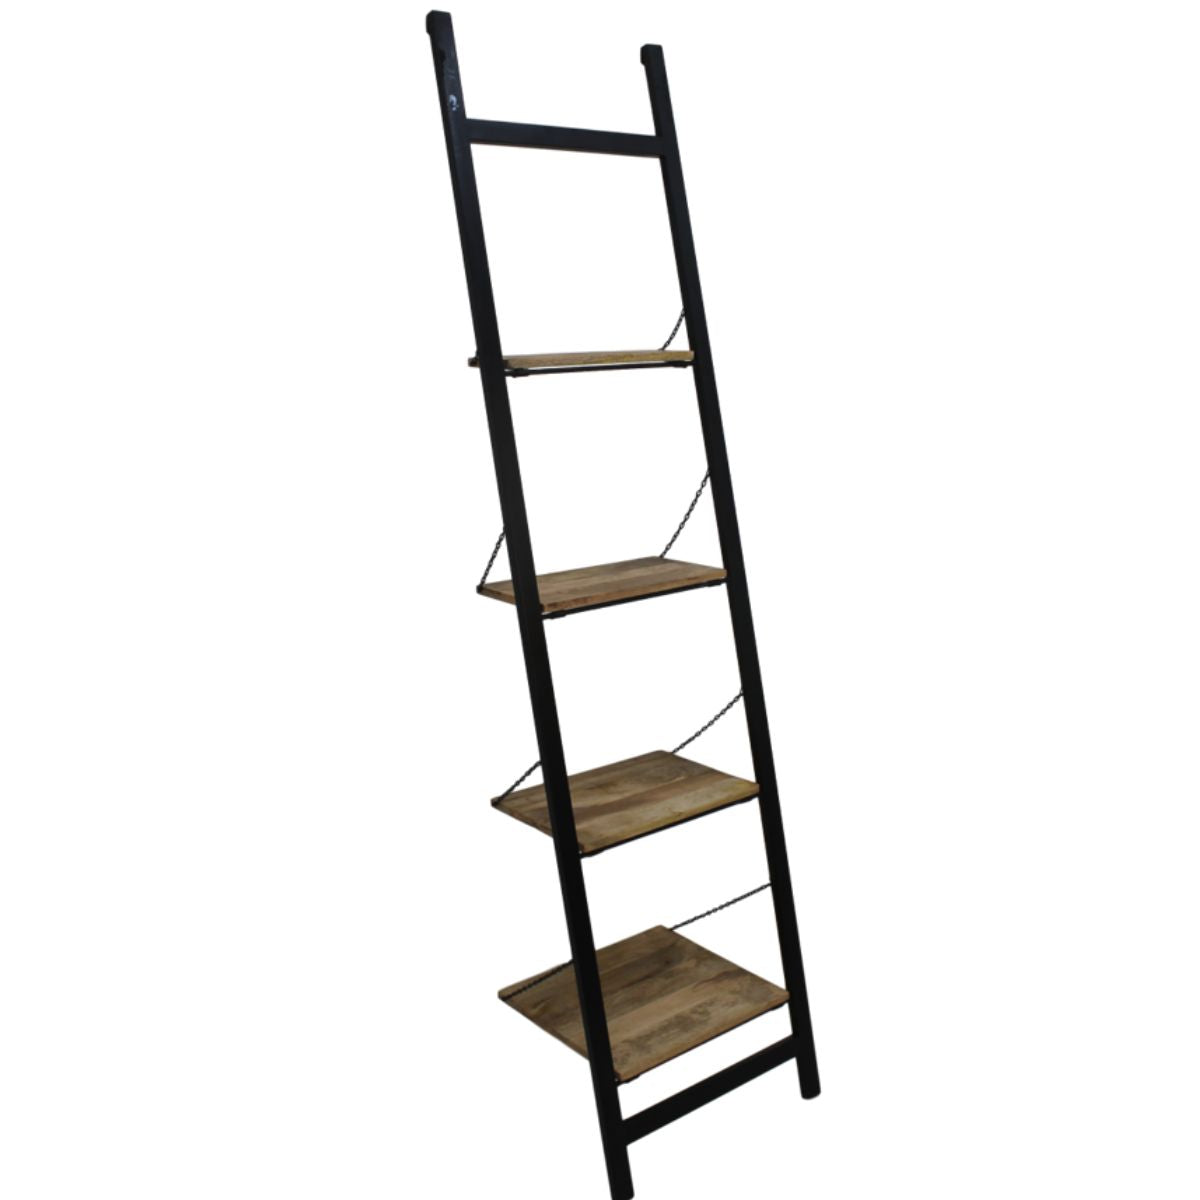 Decoratieve ladder: functioneel en elegant accent voor thuis.